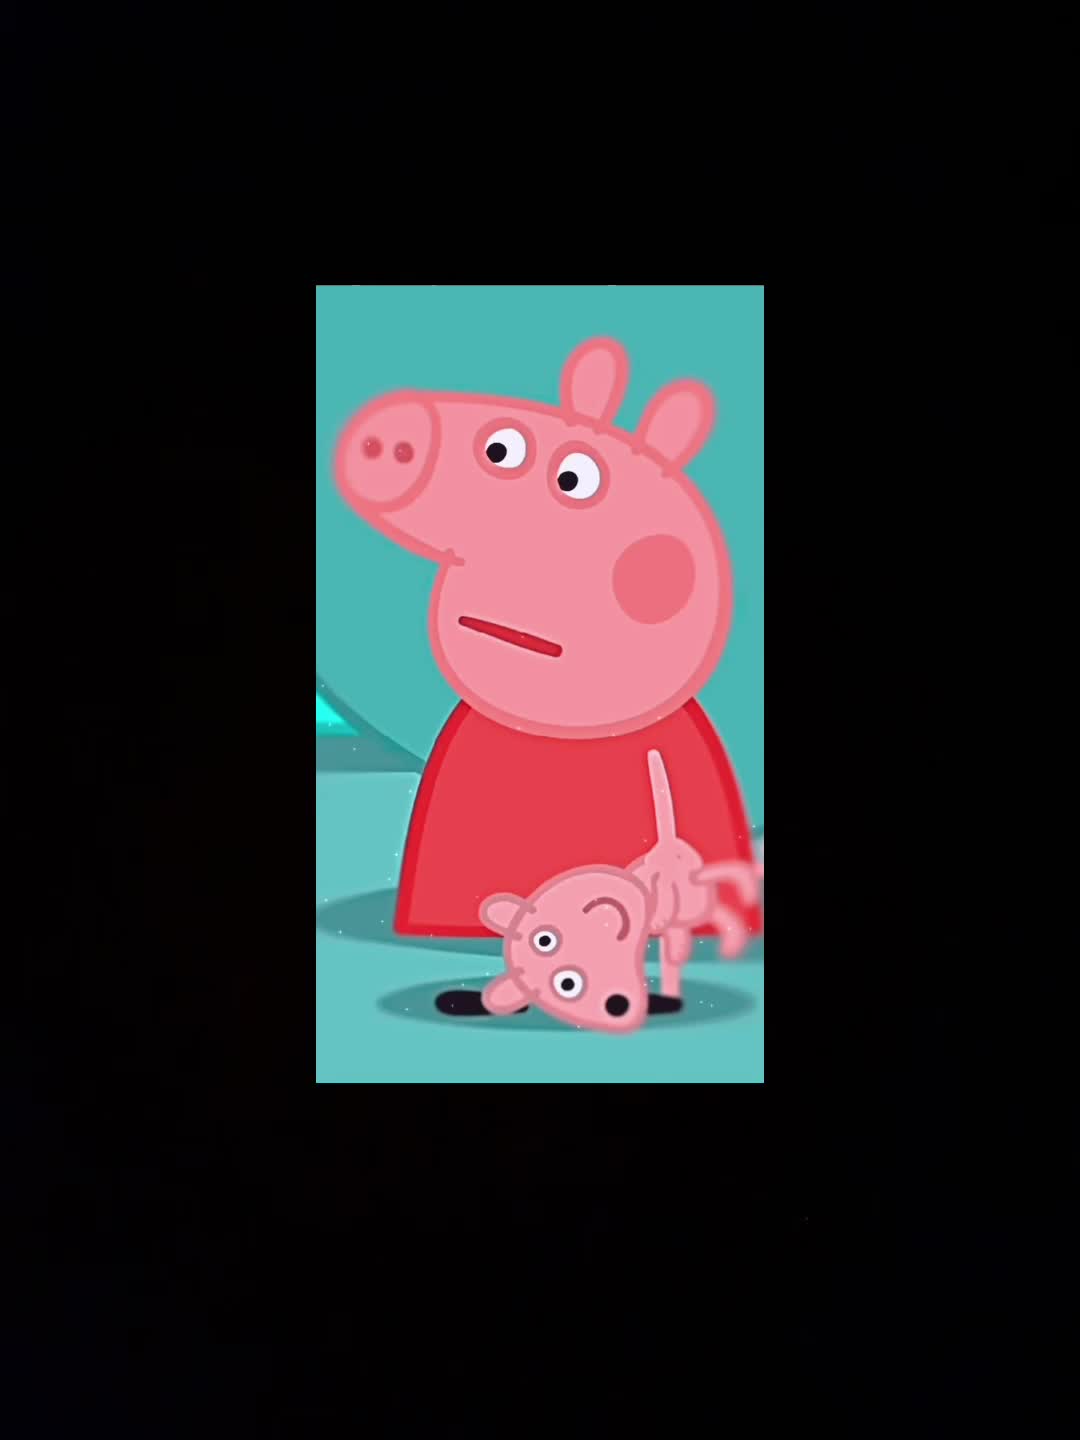 រកឃើញវីដេអូពេញនិយម​របស់ peppa pig clips cropped for fanpages